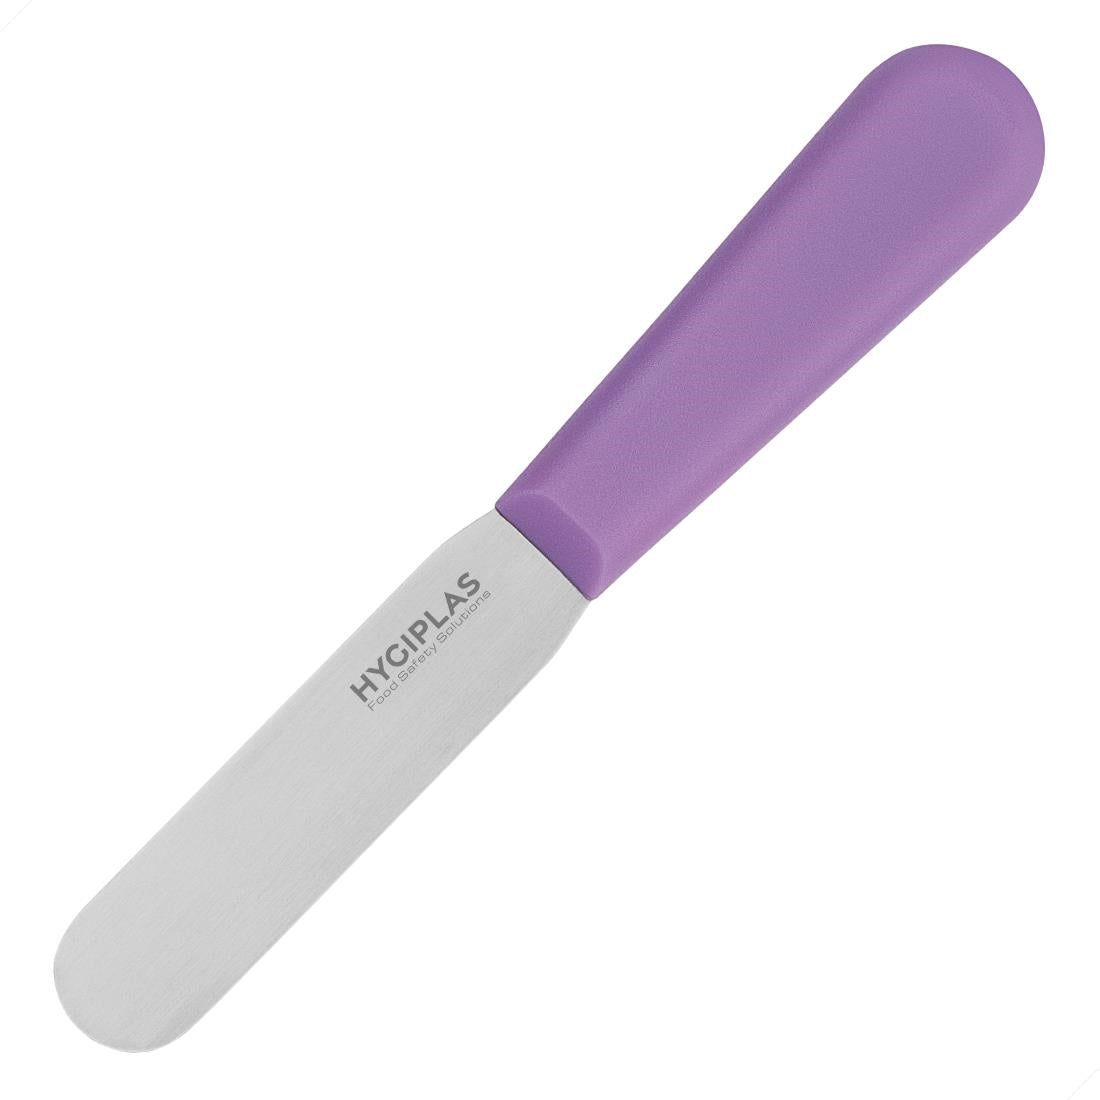 FP734 Hygiplas Palette Knife Purple - 4"